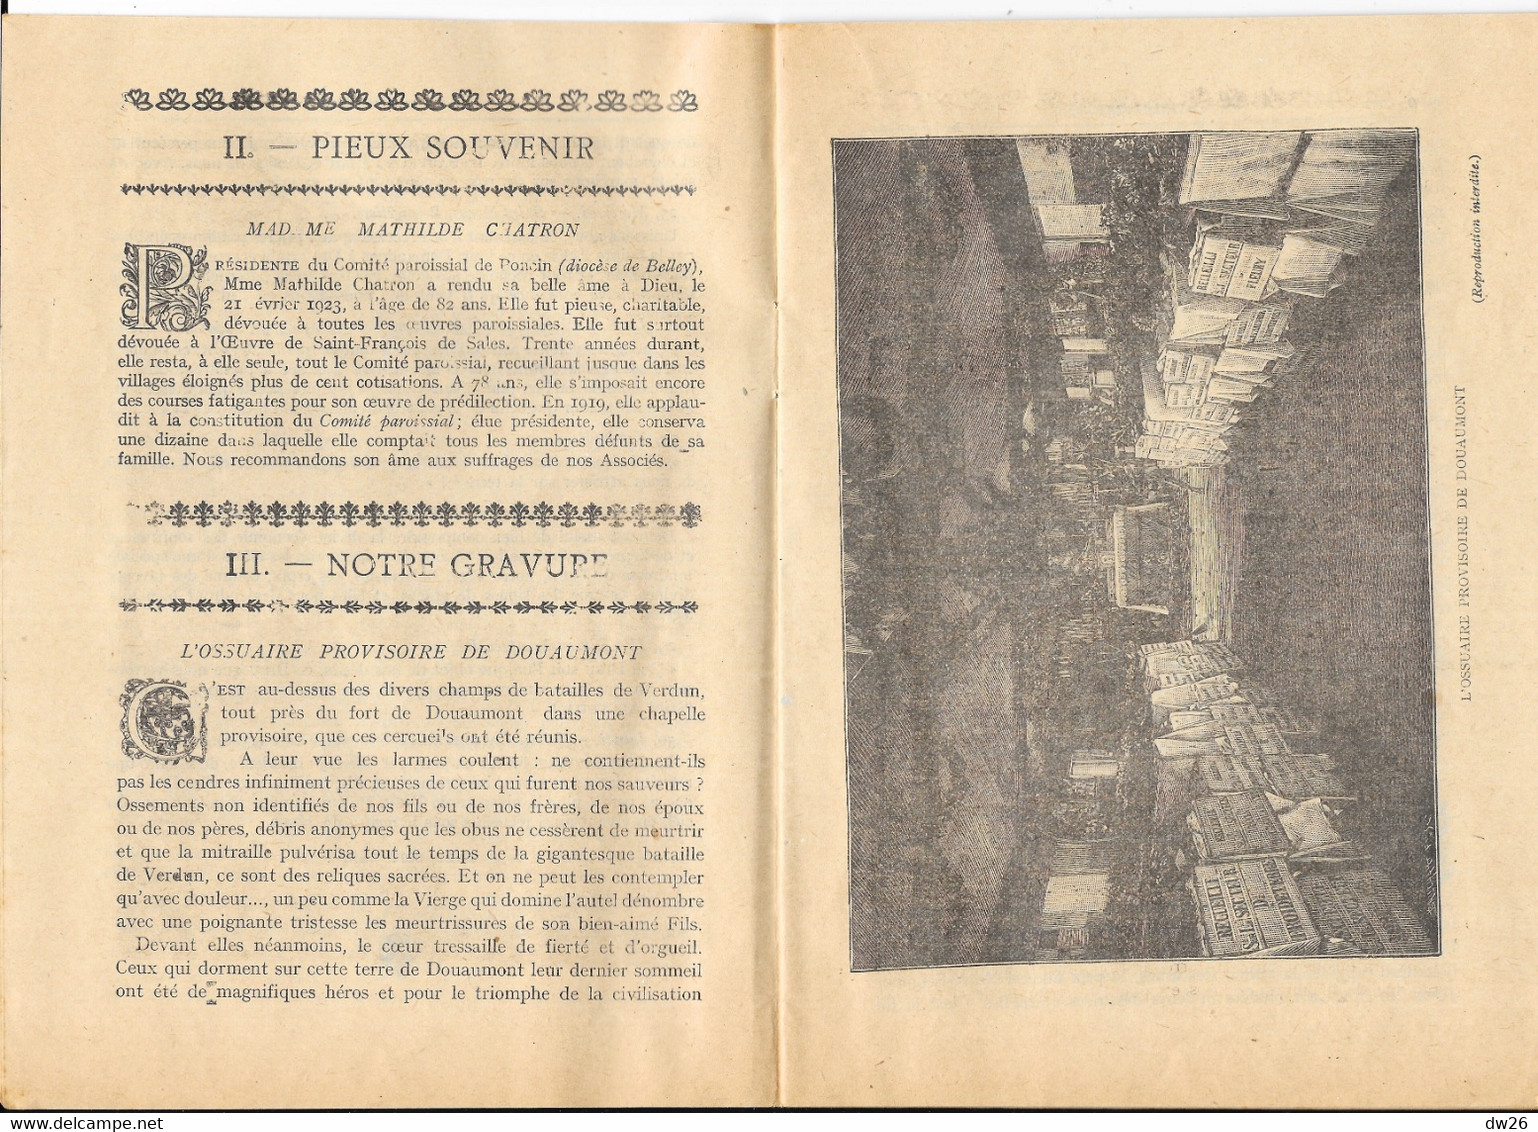 Revue Catholique: Bulletin Apostolique De L'Oeuvre De St François De Sales Pour La Défense De La Foi, 1923 N° 4 - Godsdienst